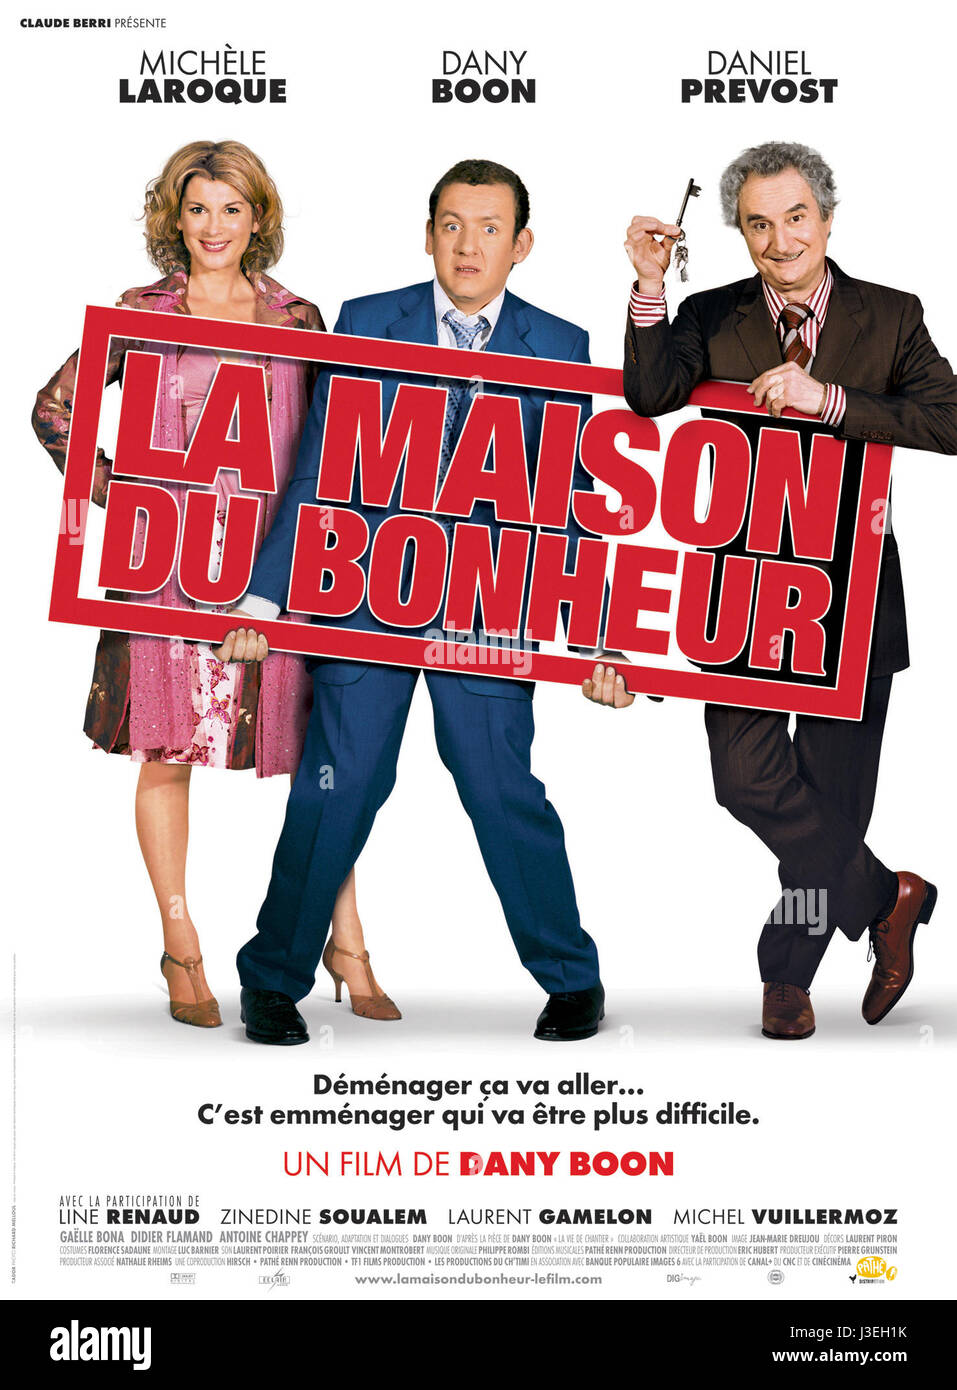 La Maison du Bonheur Year 2006 France Michèle Laroque, Dany Boon, Daniel Prévost  Director : Dany Boon Movie poster (Fr) Stock Photo